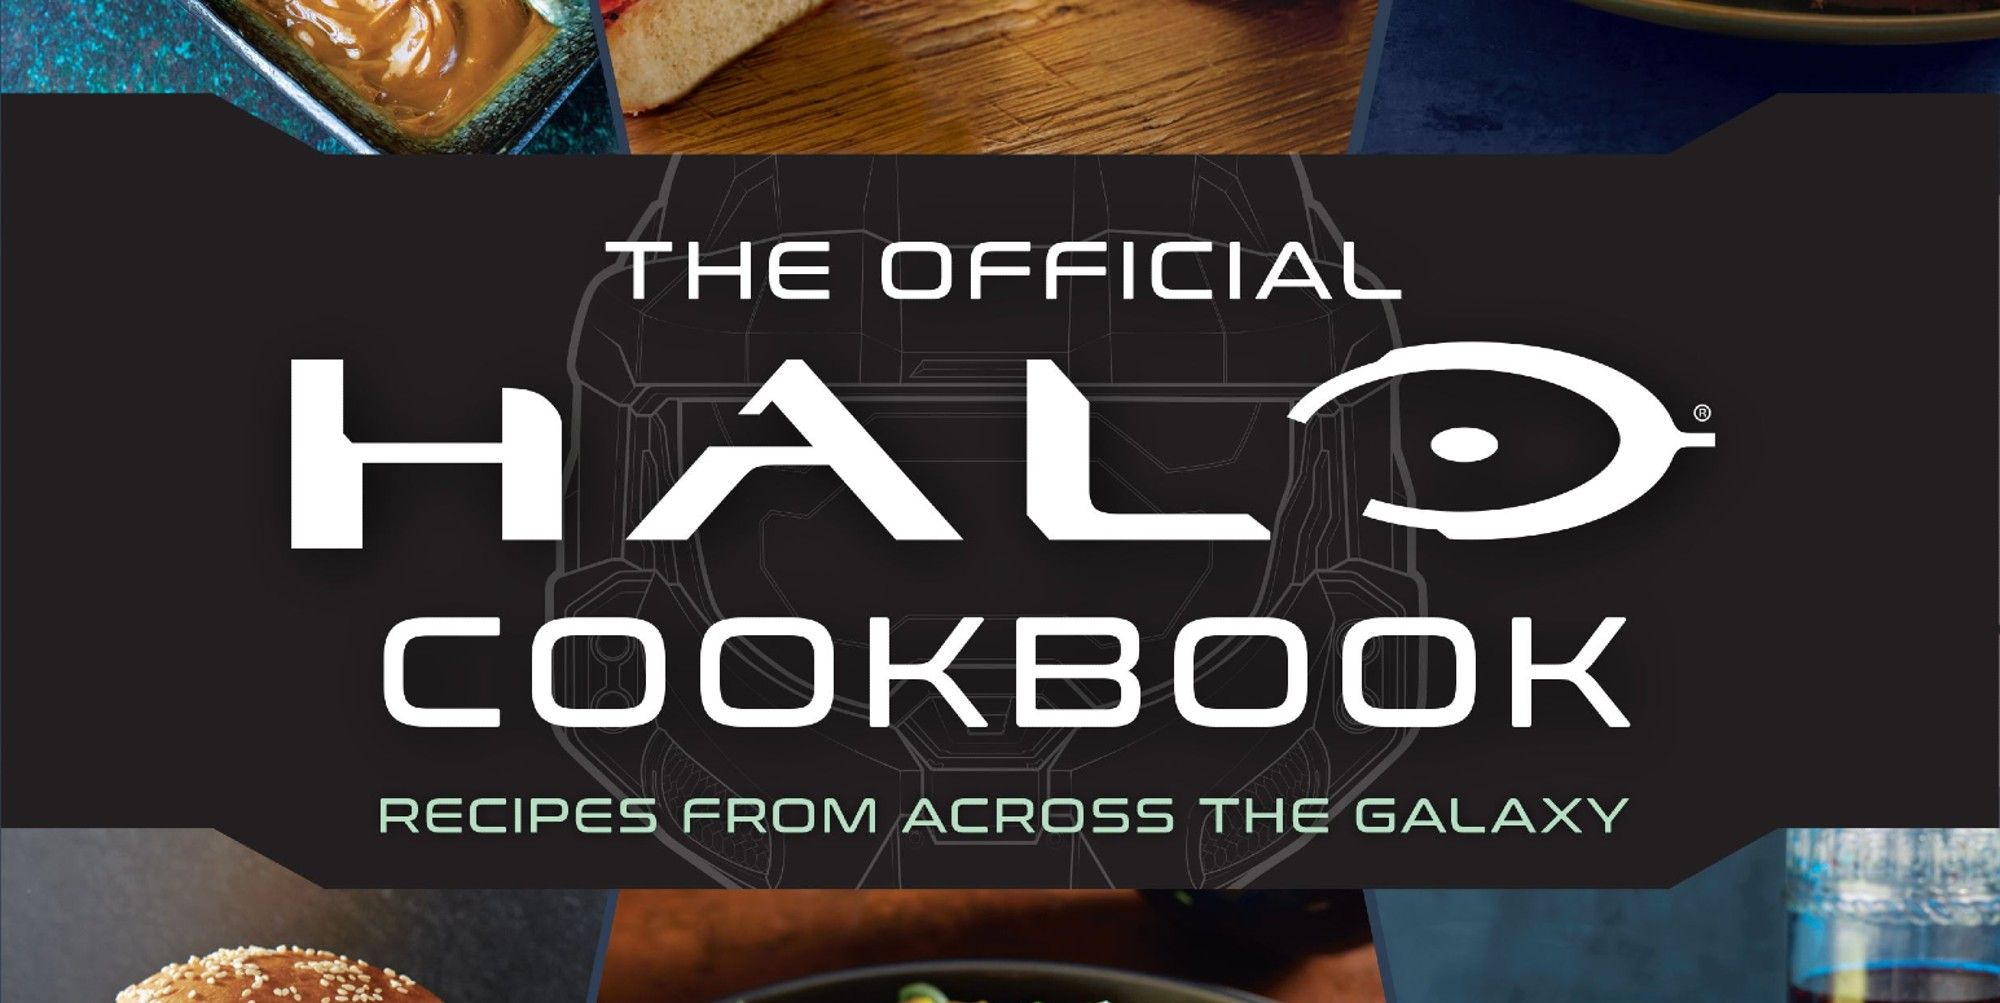 halo cookbook cover